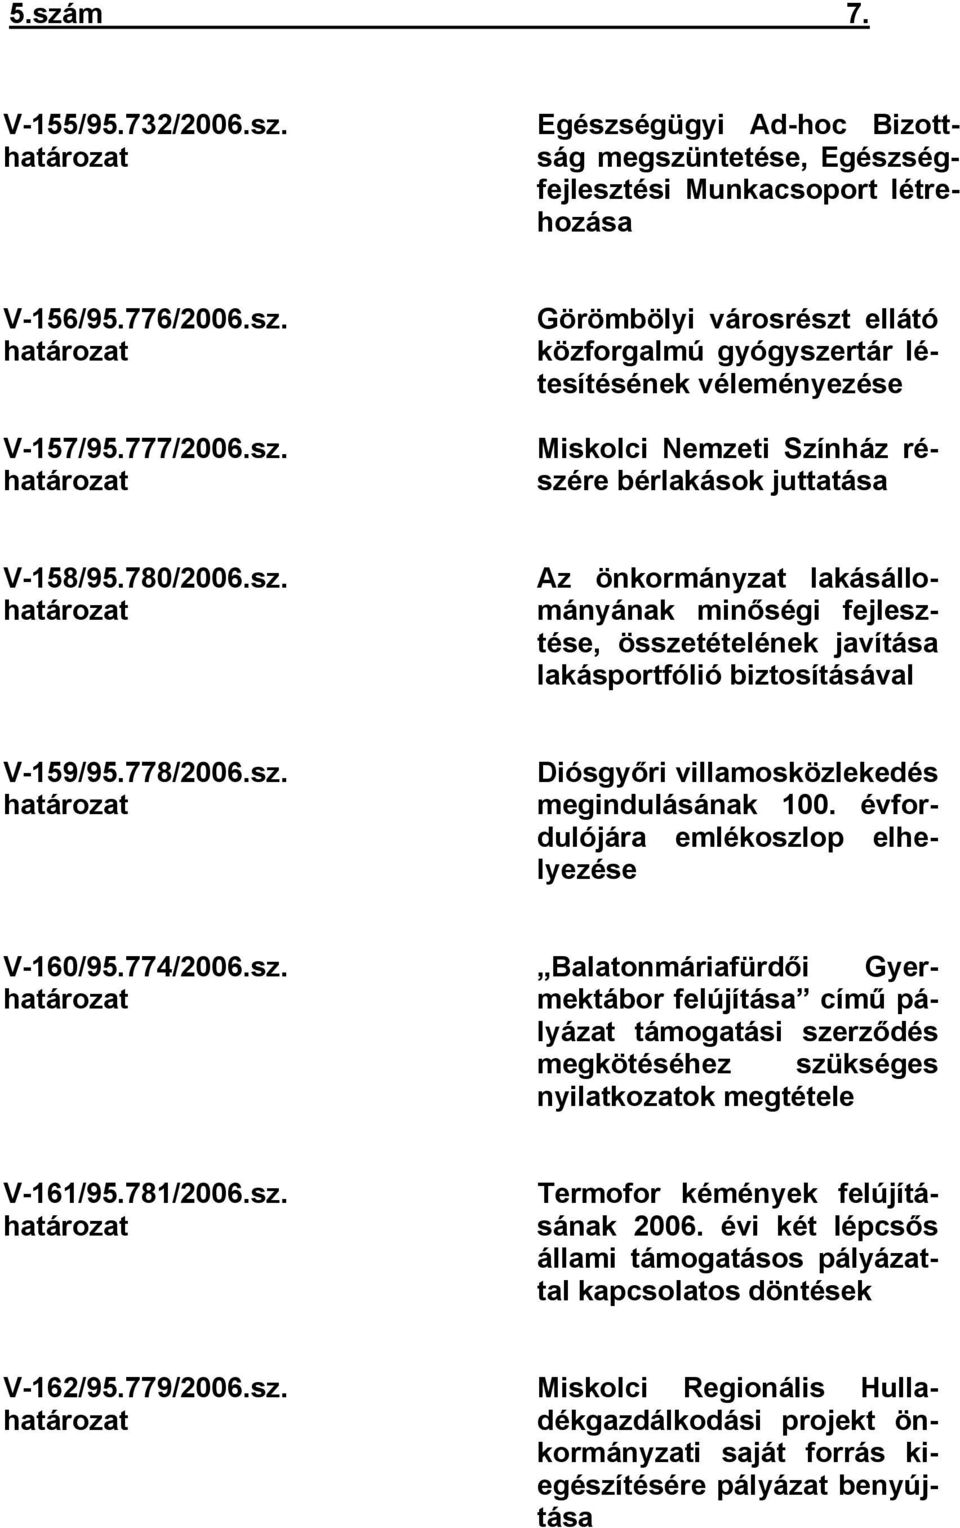 évfordulójára emlékoszlop elhelyezése Balatonmáriafürdői Gyermektábor felújítása című pályázat támogatási szerződés megkötéséhez szükséges nyilatkozatok megtétele V-161/95.781/2006.sz. határozat Termofor kémények felújításának 2006.